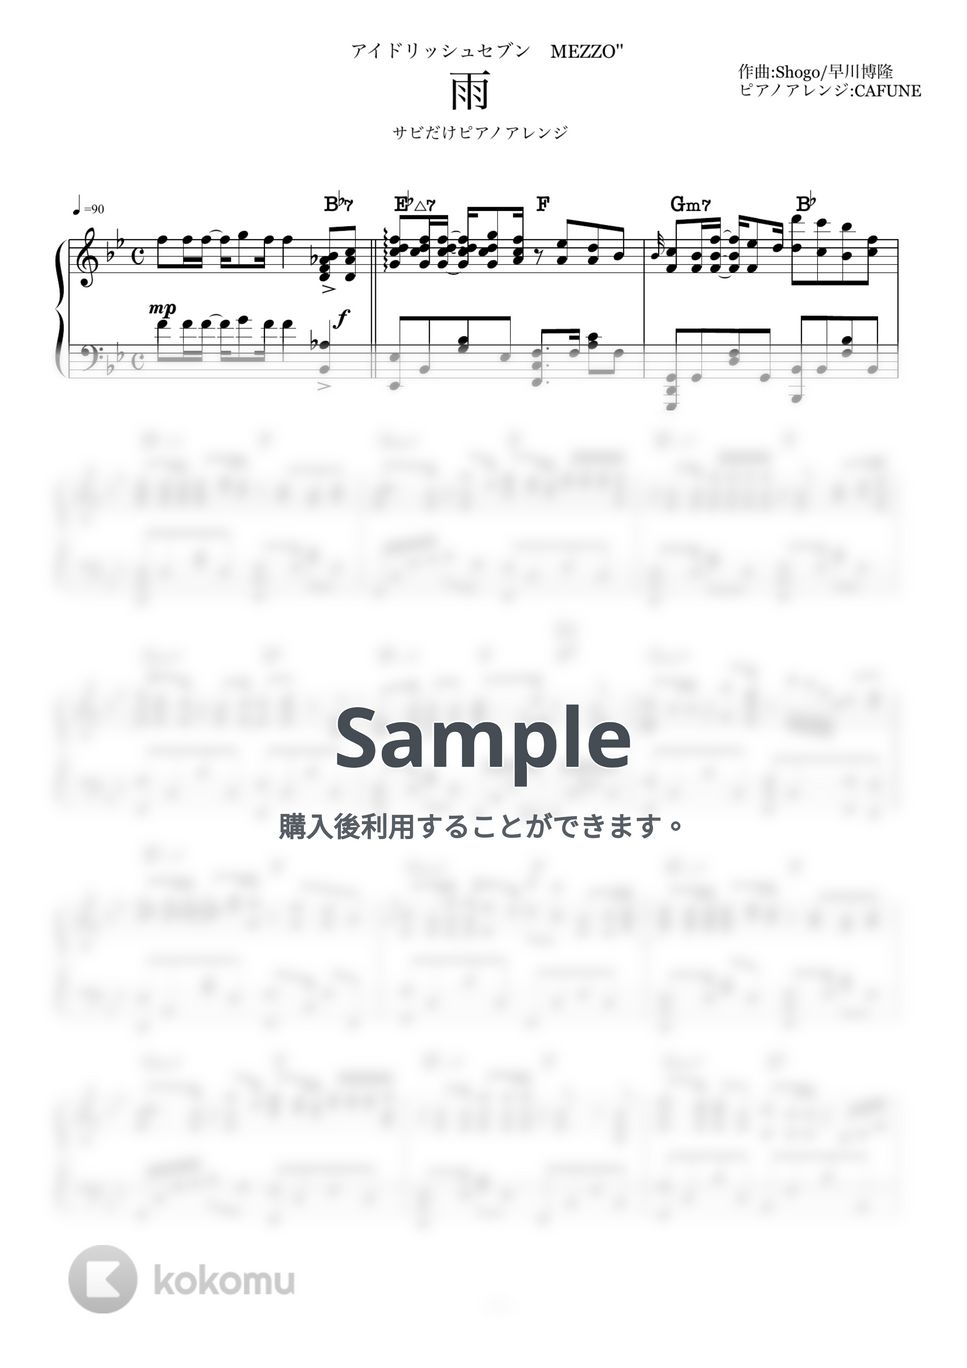 アイドリッシュセブン - 雨　MEZZO サビだけピアノ楽譜 (ピアノソロ/アイドリッシュセブン/コード有/mezzo) by CAFUNE-かふね-